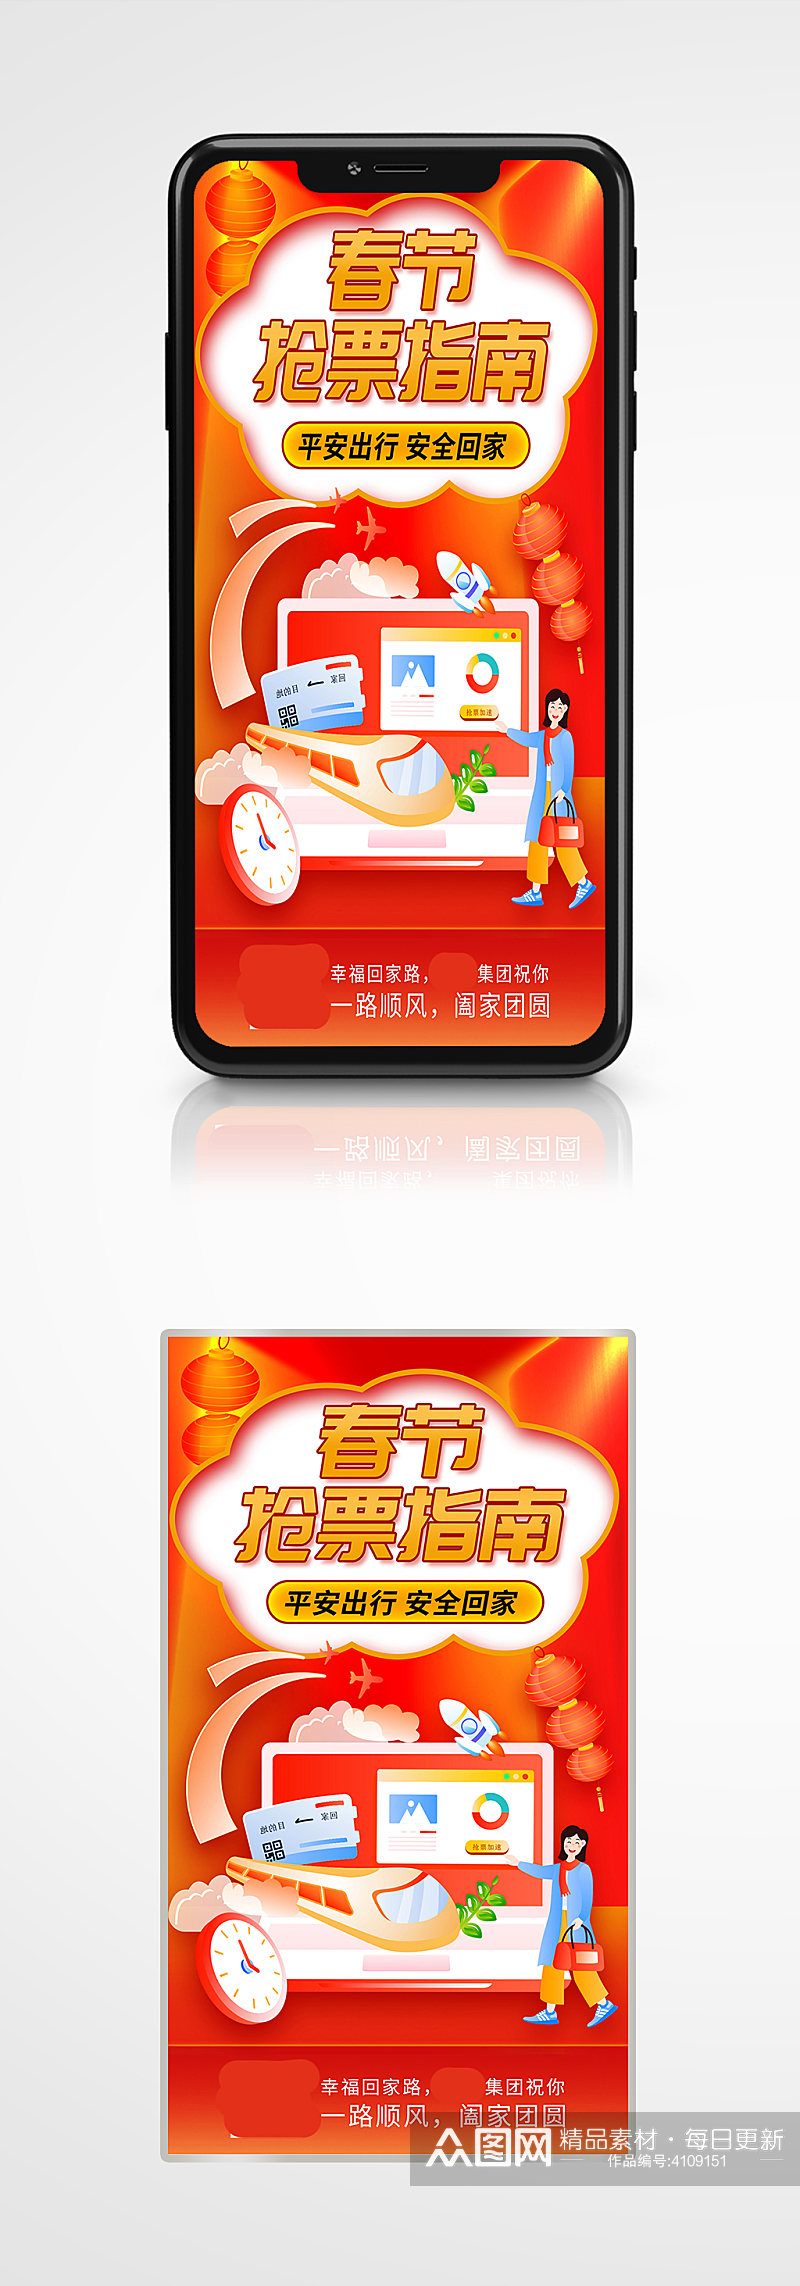 喜庆春节春运抢票日历攻略指南手机海报新年素材